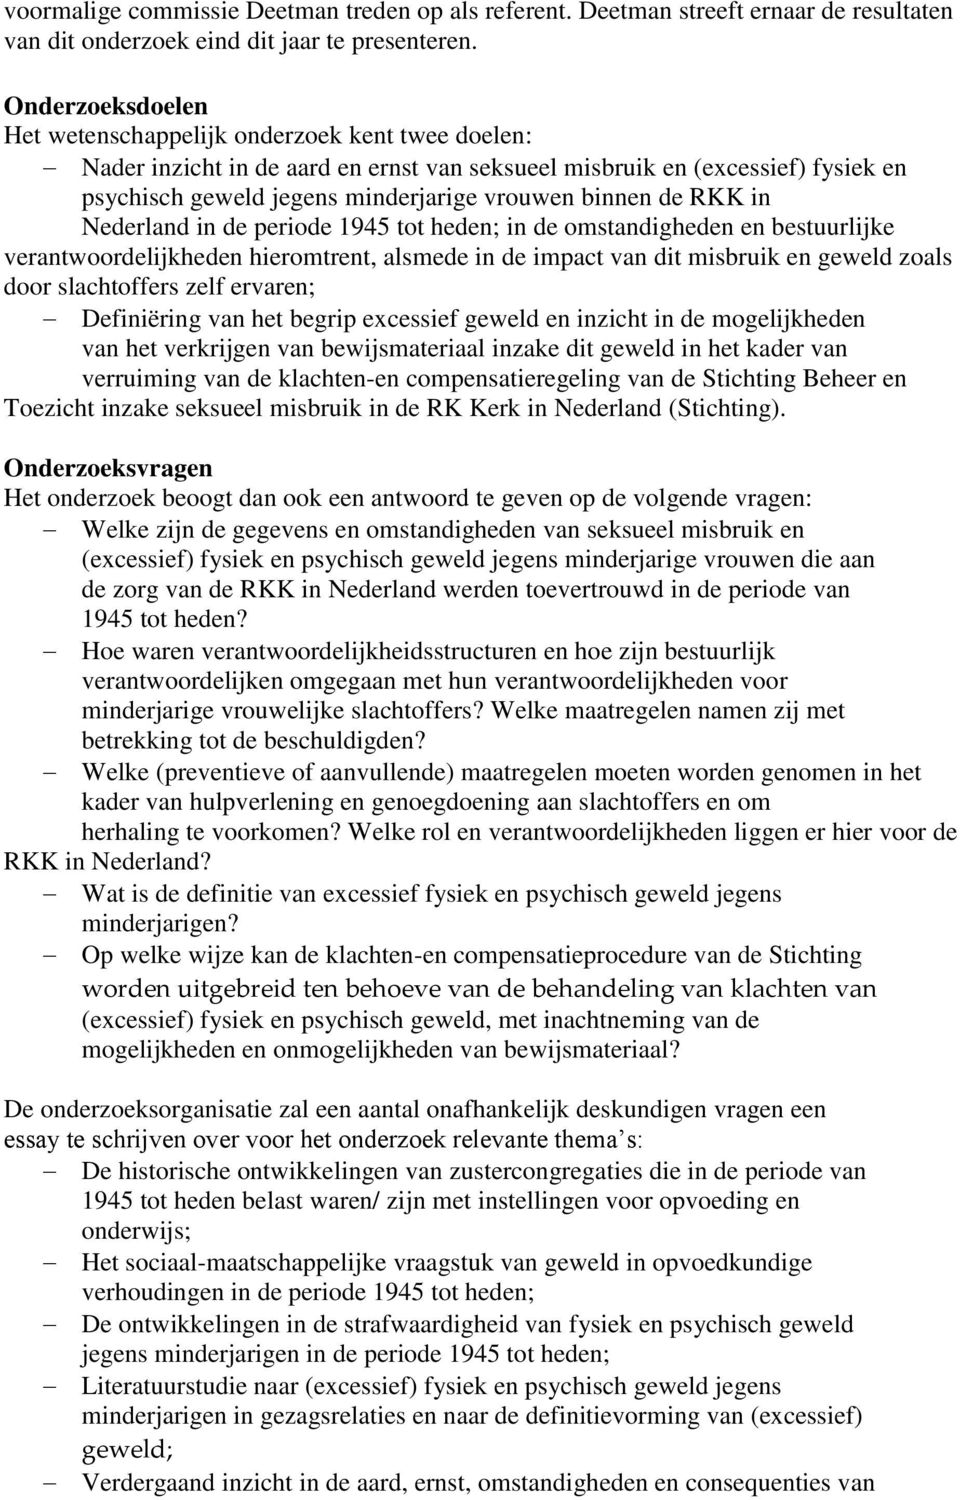 de RKK in Nederland in de periode 1945 tot heden; in de omstandigheden en bestuurlijke verantwoordelijkheden hieromtrent, alsmede in de impact van dit misbruik en geweld zoals door slachtoffers zelf